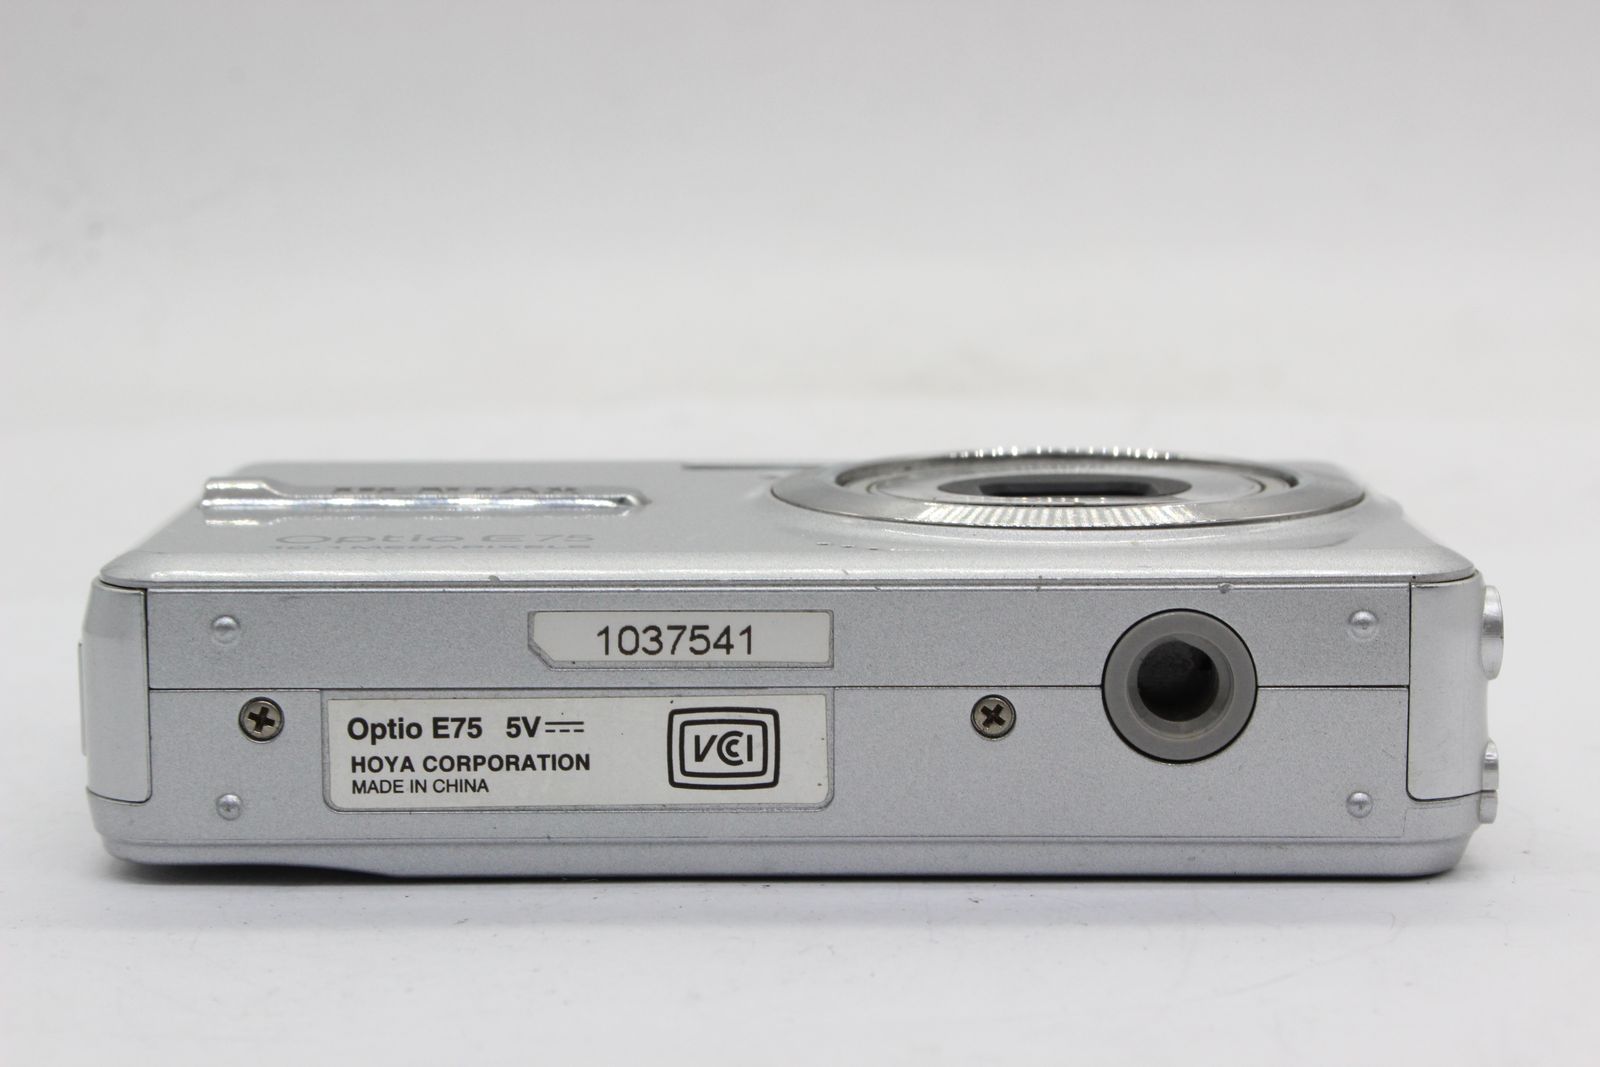 【返品保証】 ペンタックス Pentax Optio E75 3x バッテリー付き コンパクトデジタルカメラ s5909